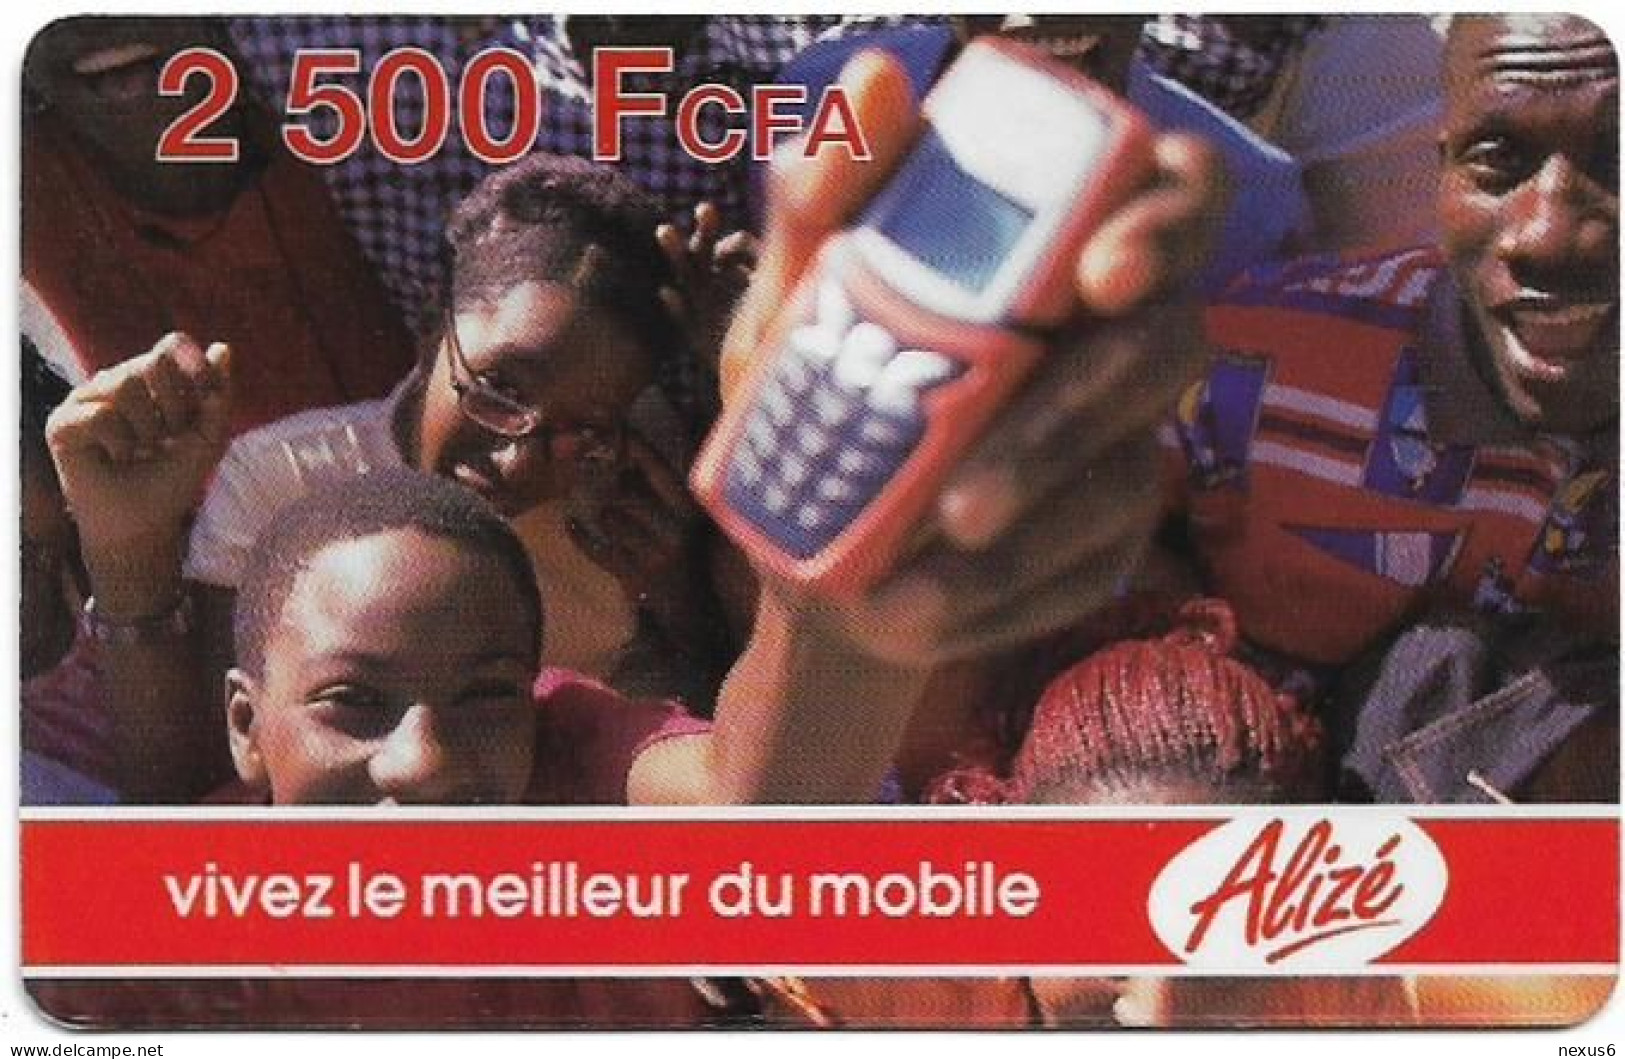 Senegal - Alizé - Vivez Le Meilleur Du Mobile - Crowd And Mobile, Reverse 2, GSM Refill 2.500CFA, Used - Sénégal